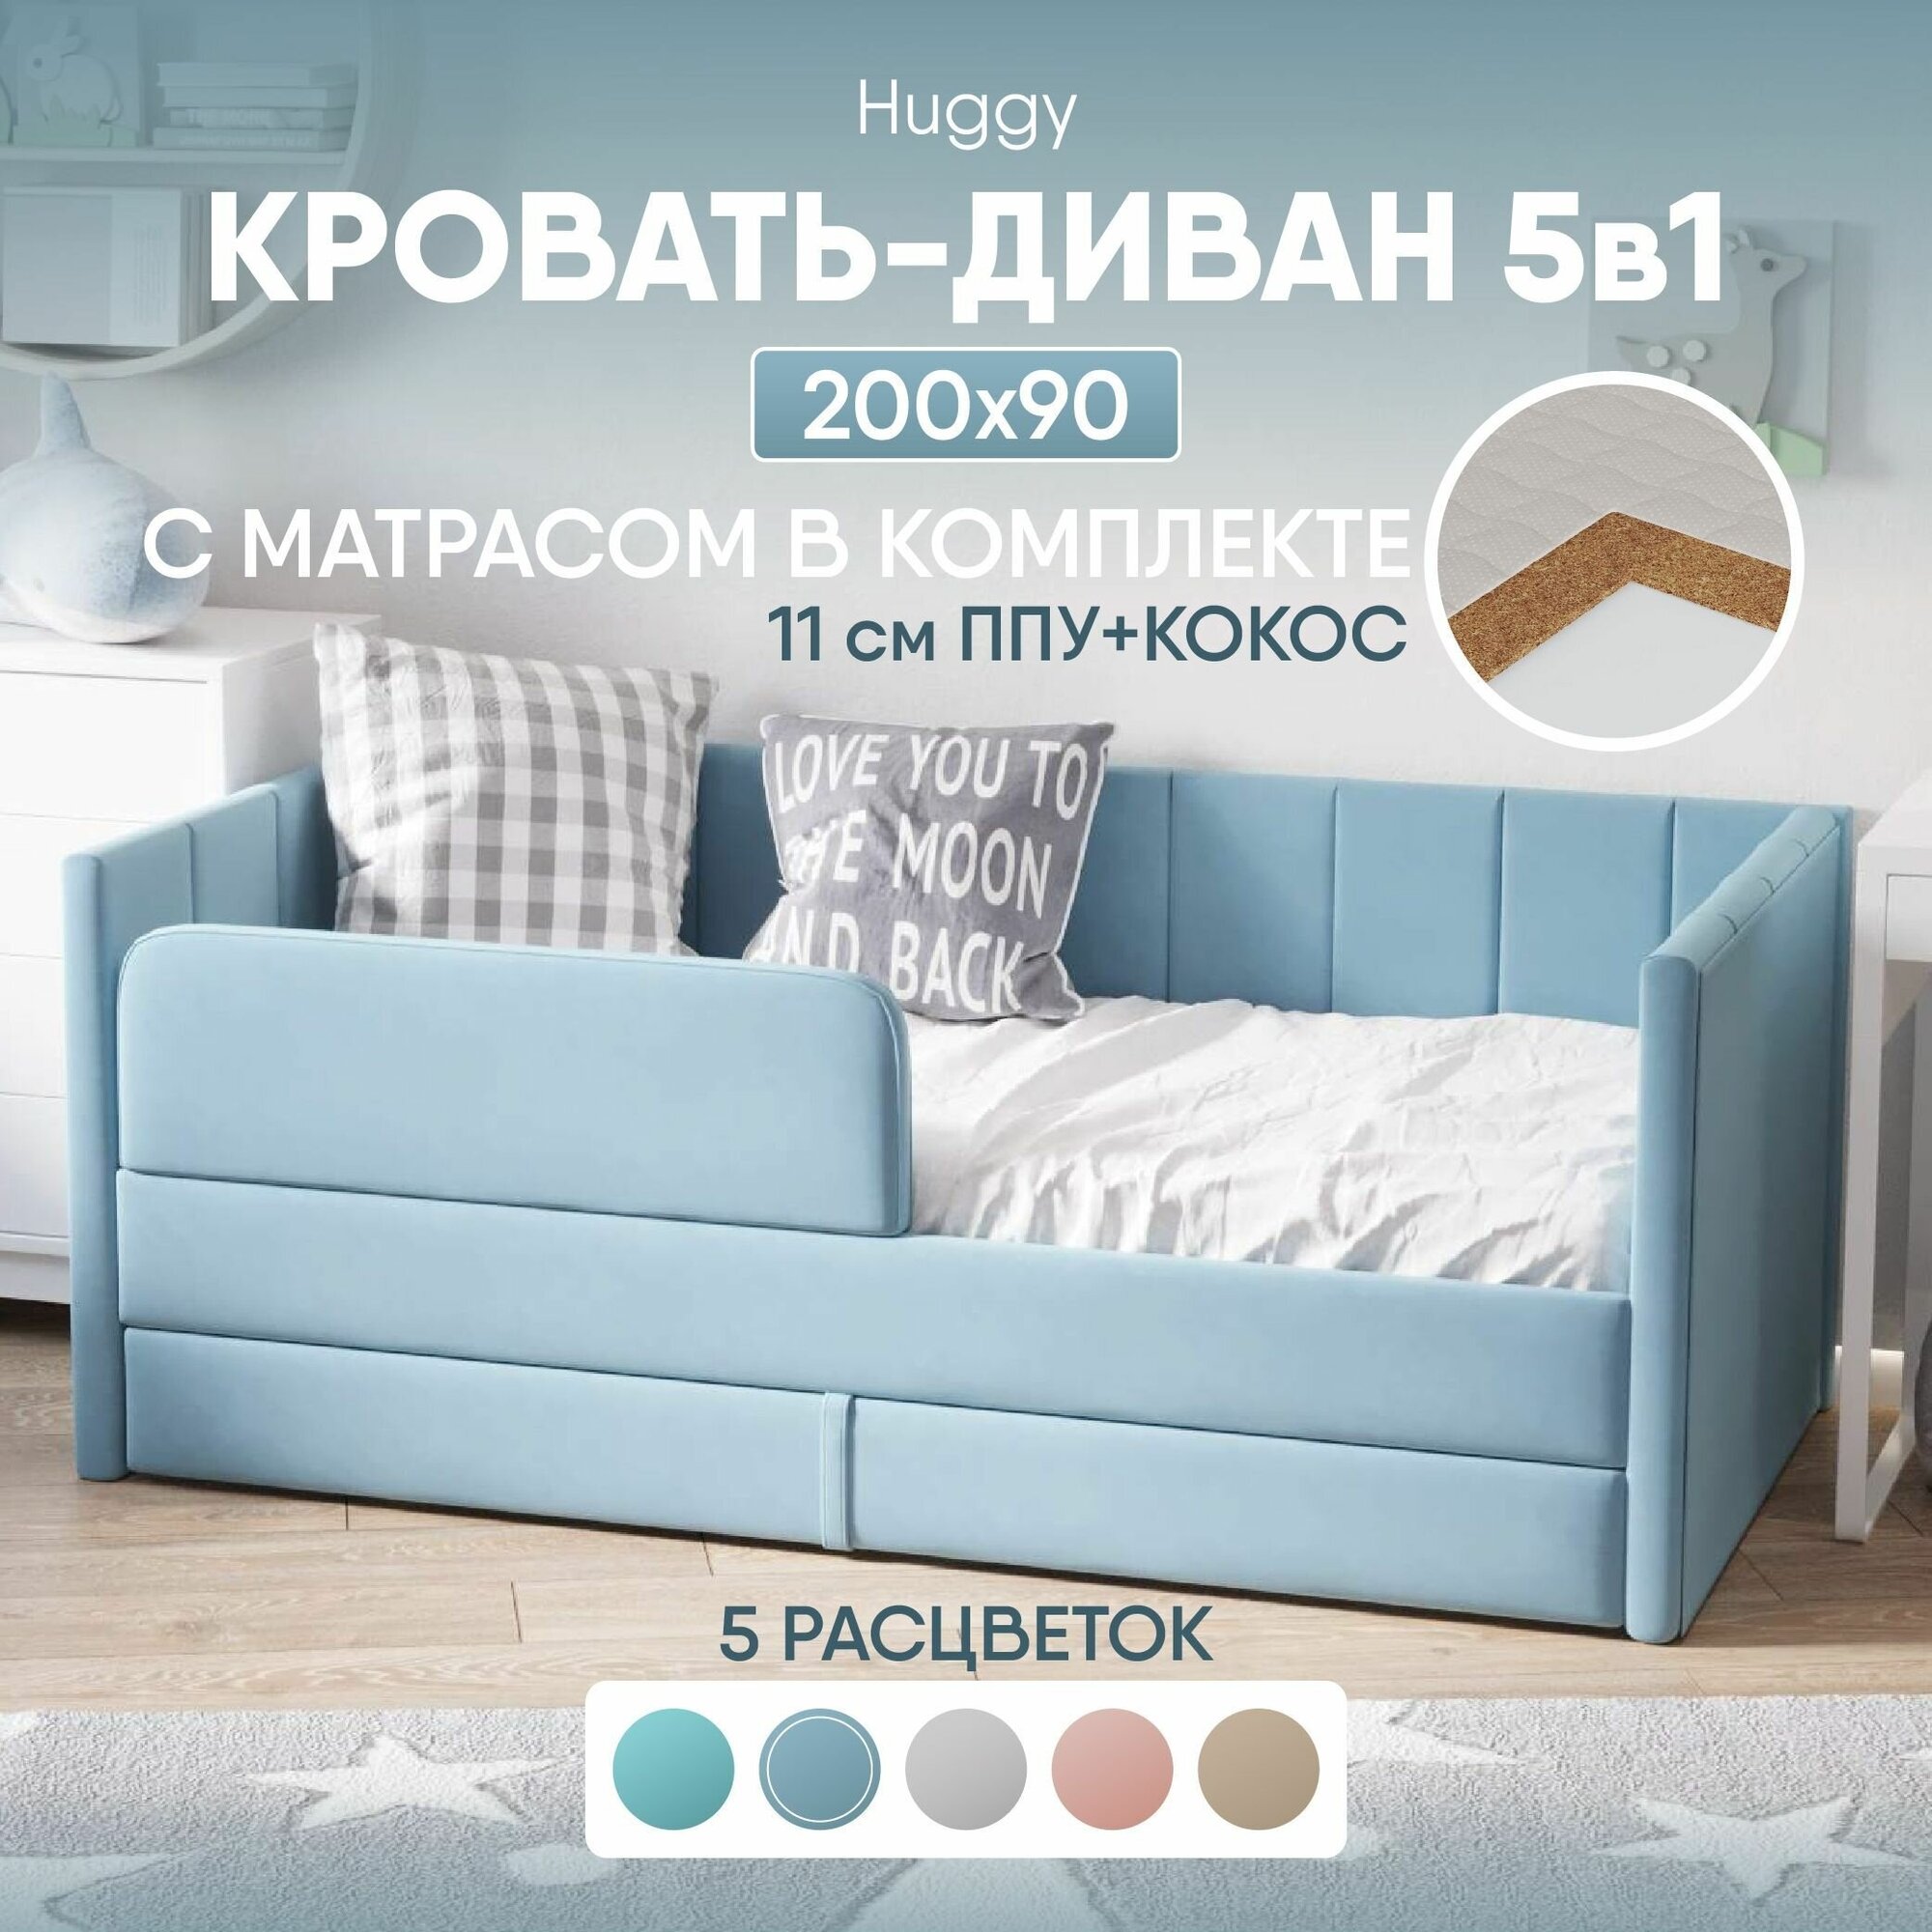 Кровать диван с матрасом 200х90 Huggy выкатной от 3 лет, цвет Голубой, тахта кровать детская односпальная подростковая с ящиком и защитными бортиками